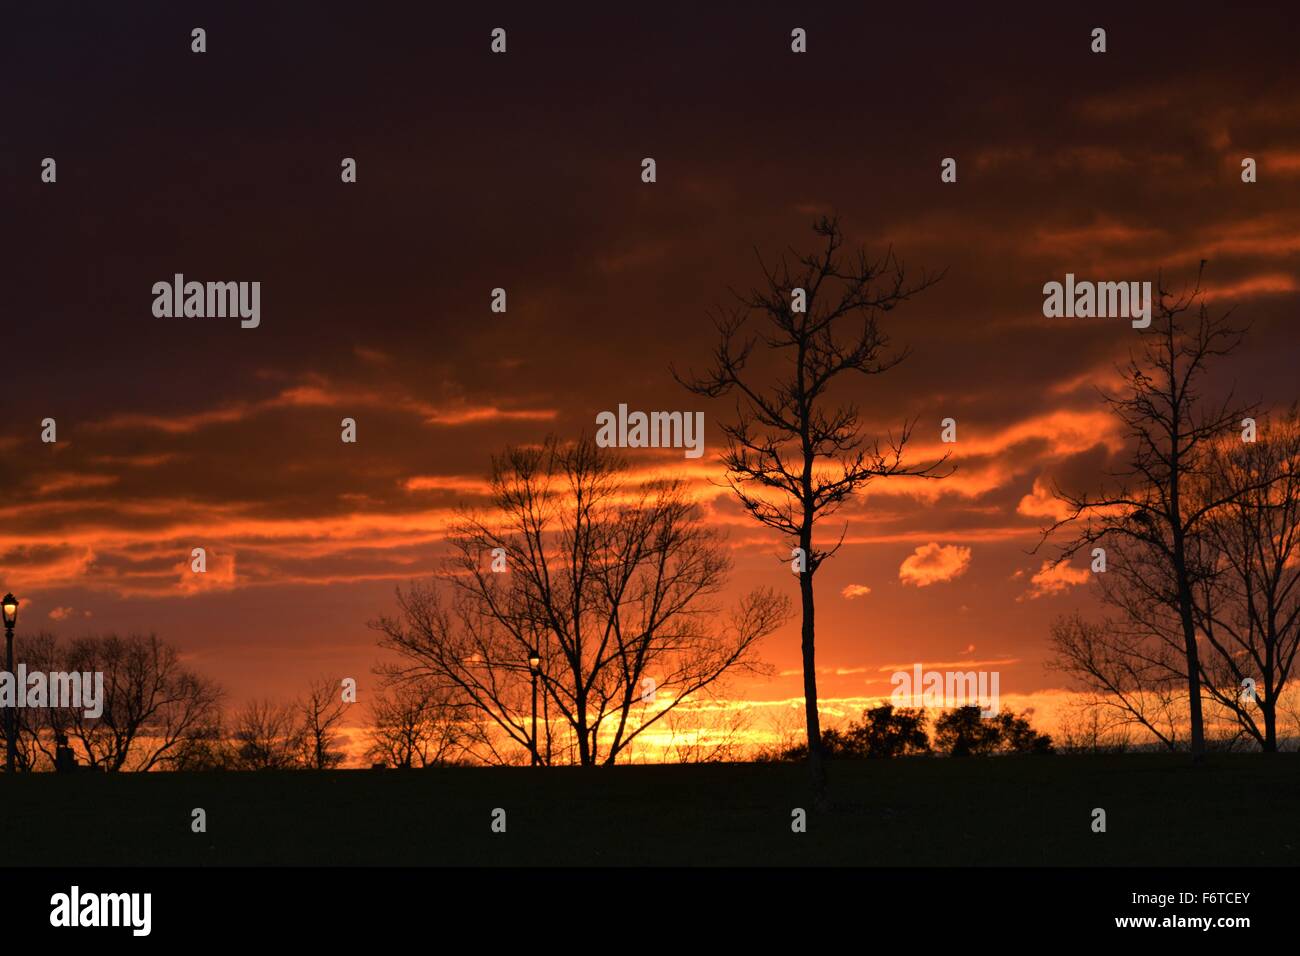 Awesome sunset Stock Photo